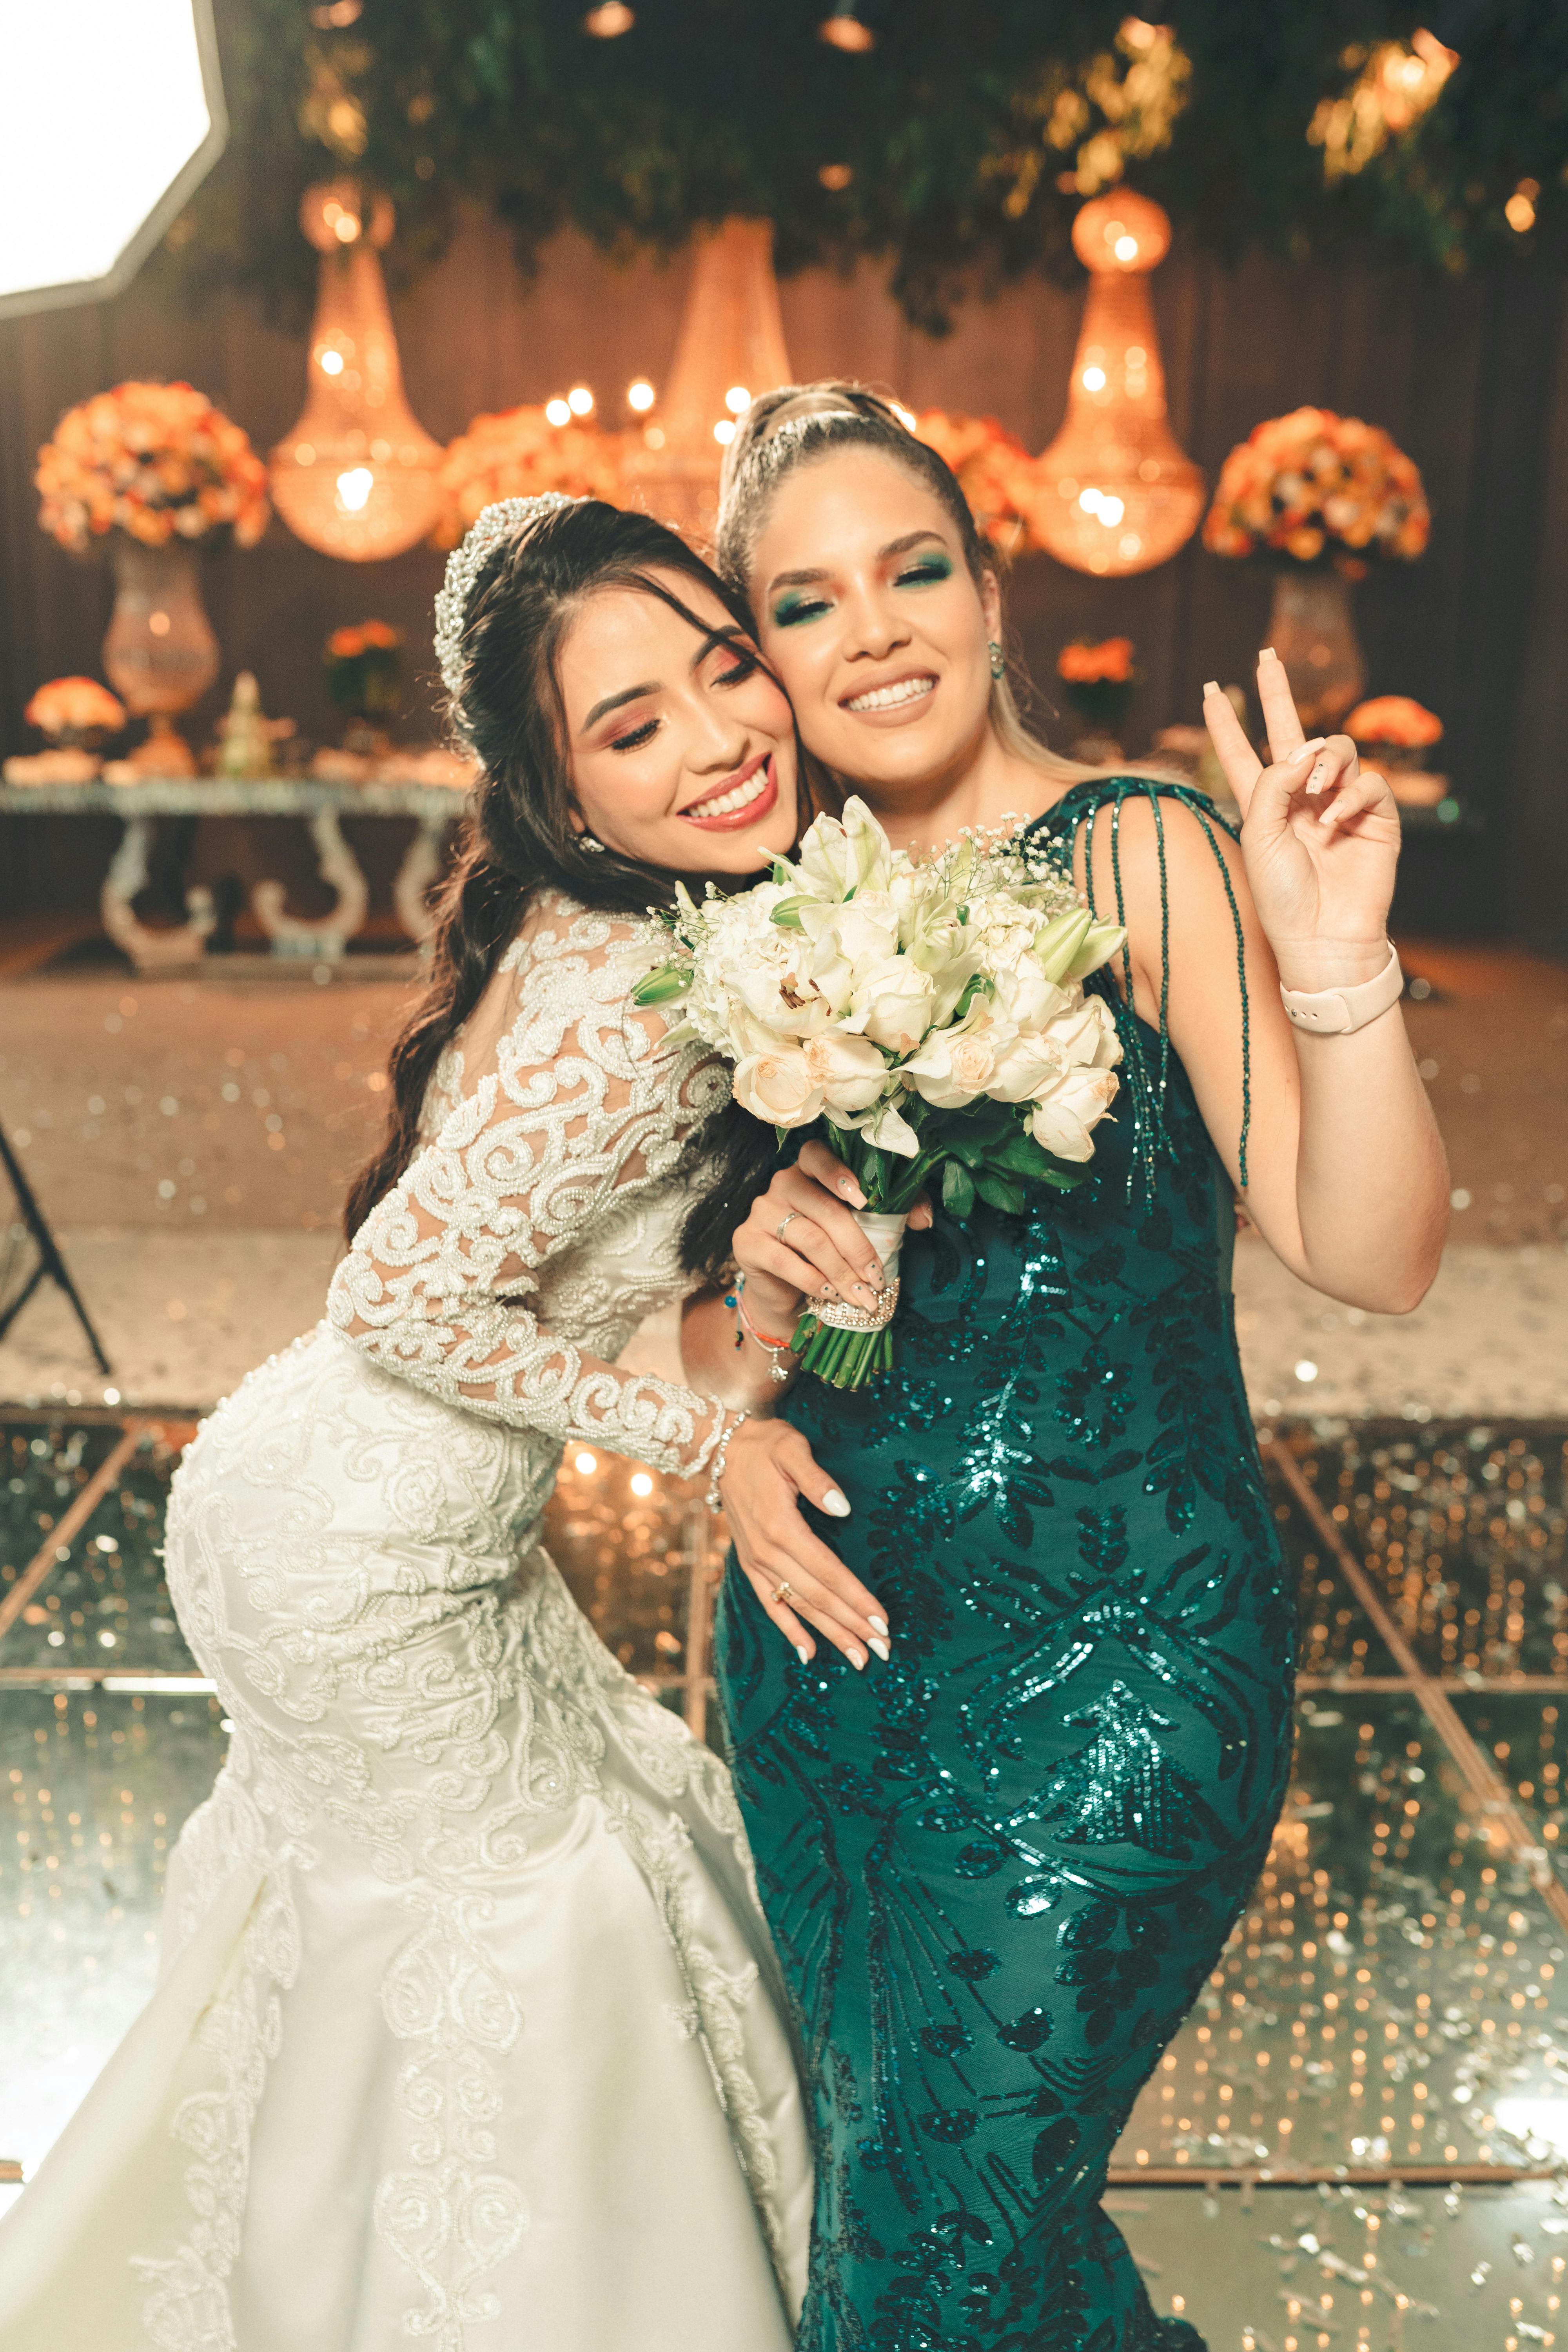 La novia y su cuñada | Fuente: Pexels